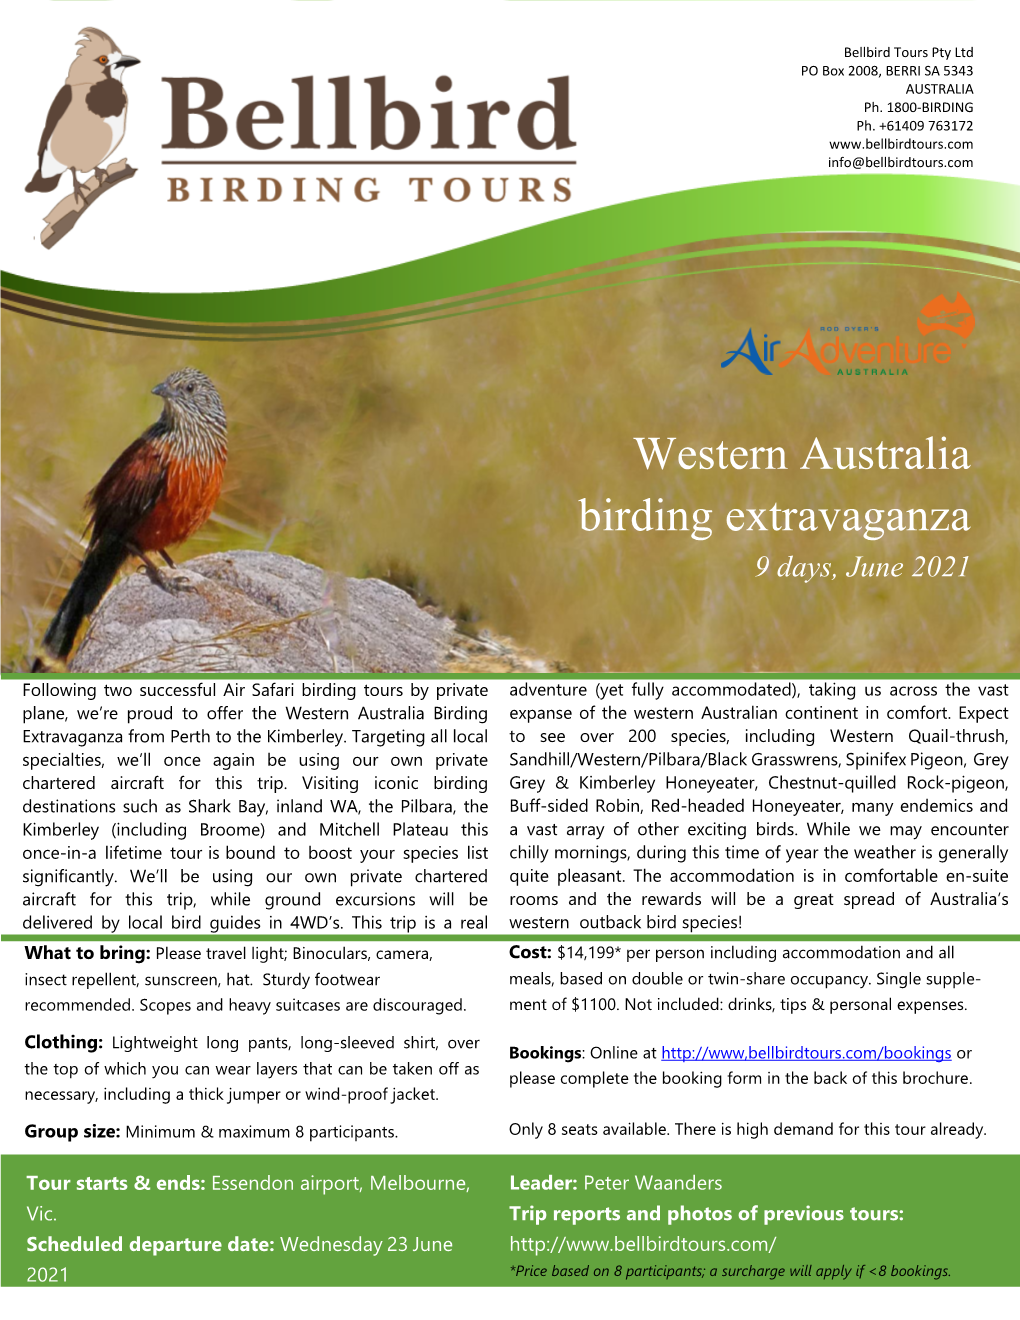 Western Australia Birding Extravaganza 9 Days, June 2021